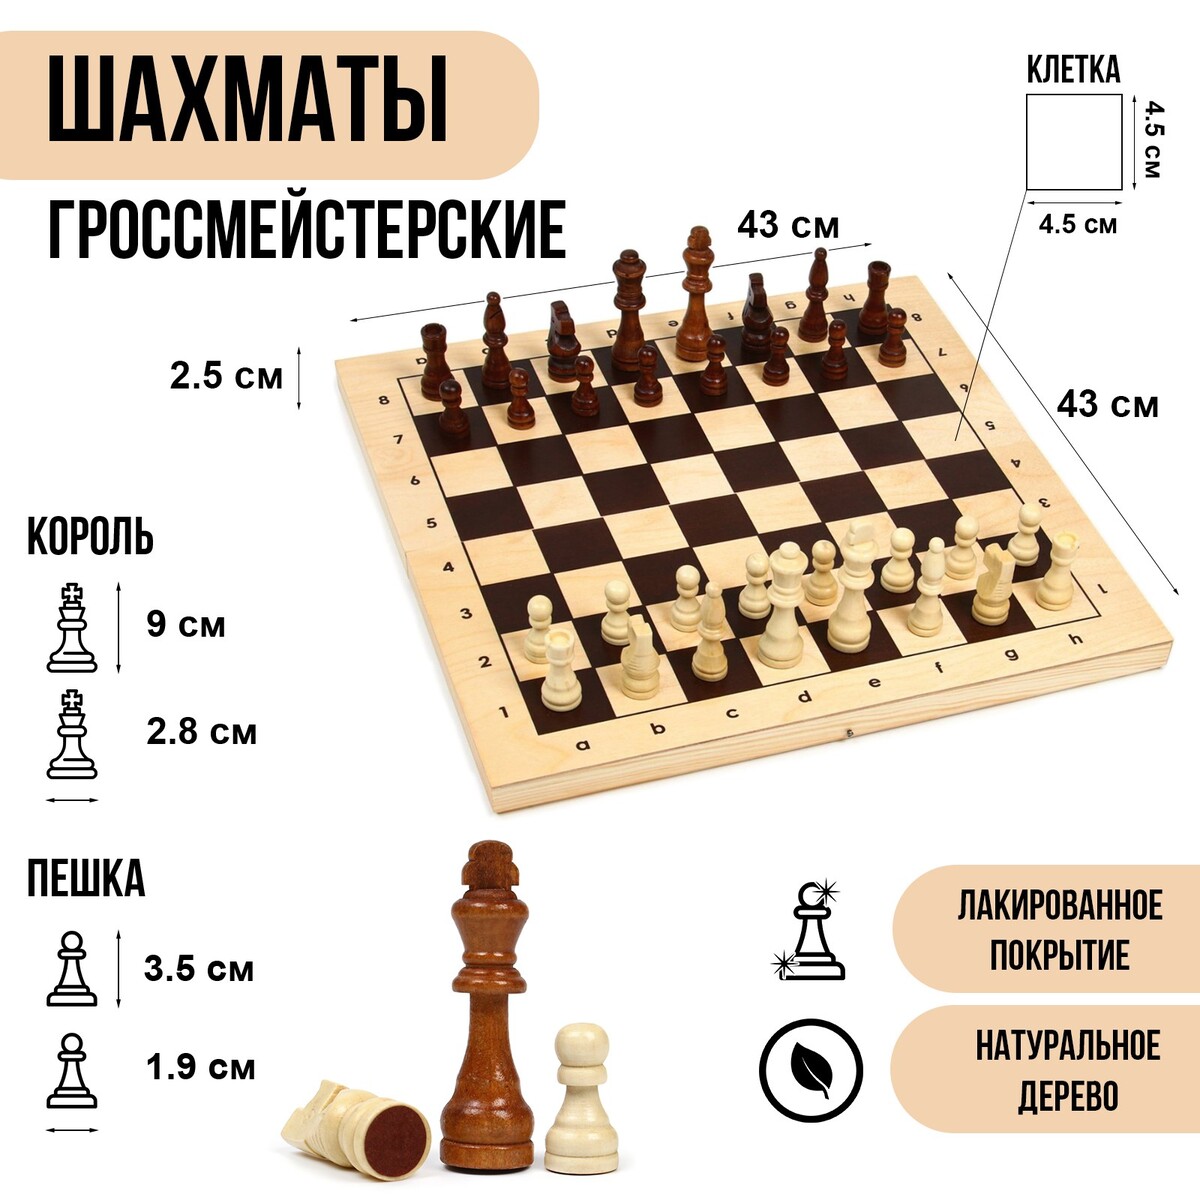 Шахматы деревянные гроссмейстерские, турнирные 43 х 43 см, король h-9 см, пешка h-3.5 см шахматы деревянные 50 х 50 см